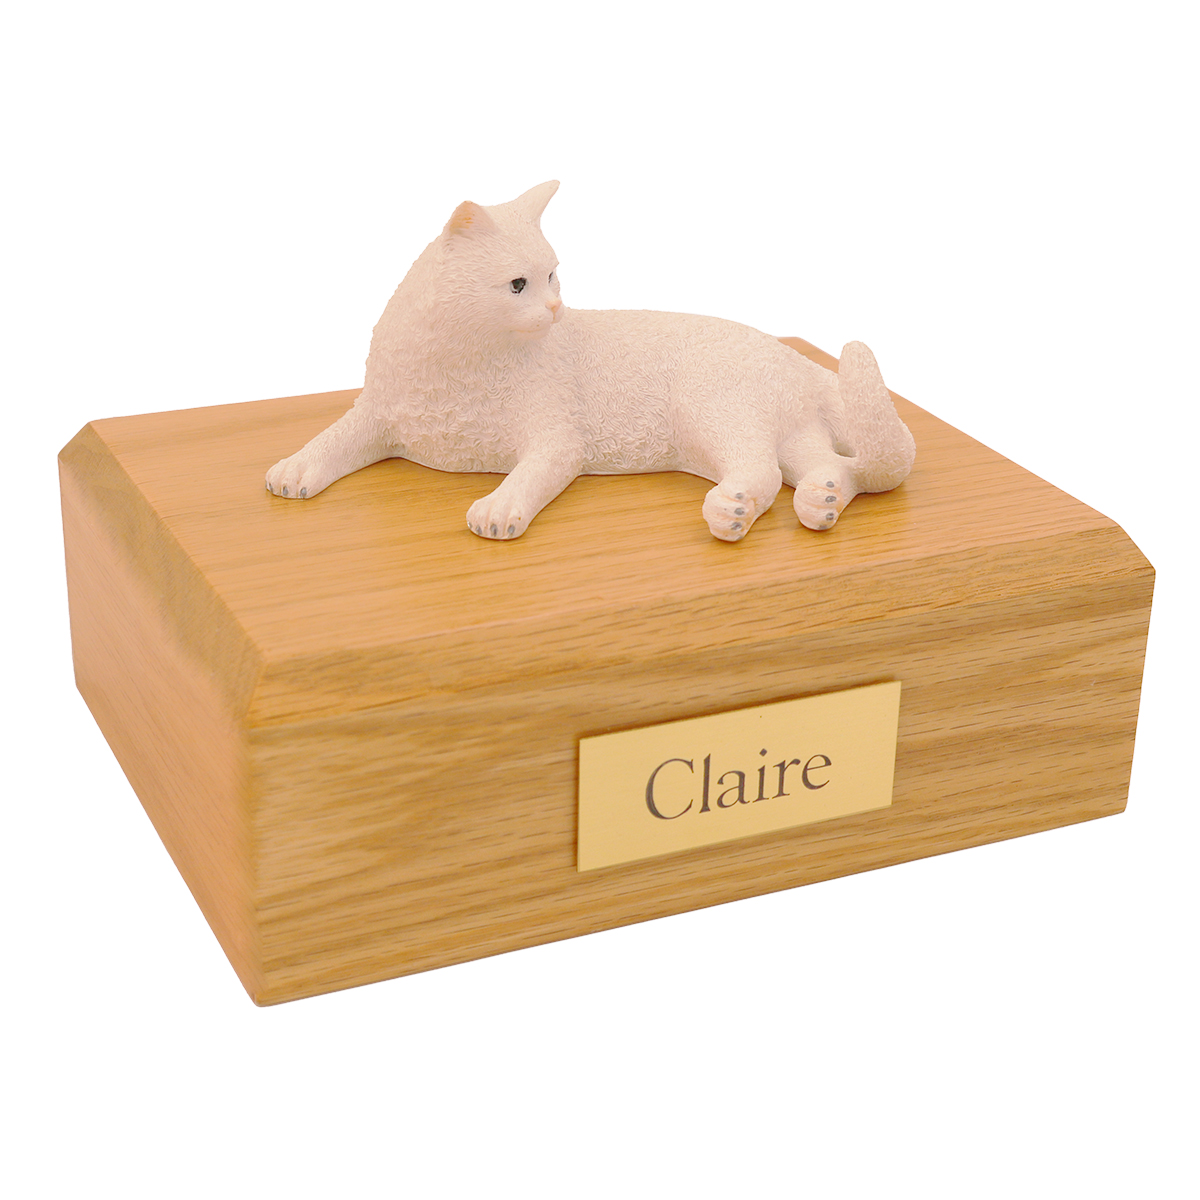 Cat, White, British Short Hair Laying - Figurine Urn